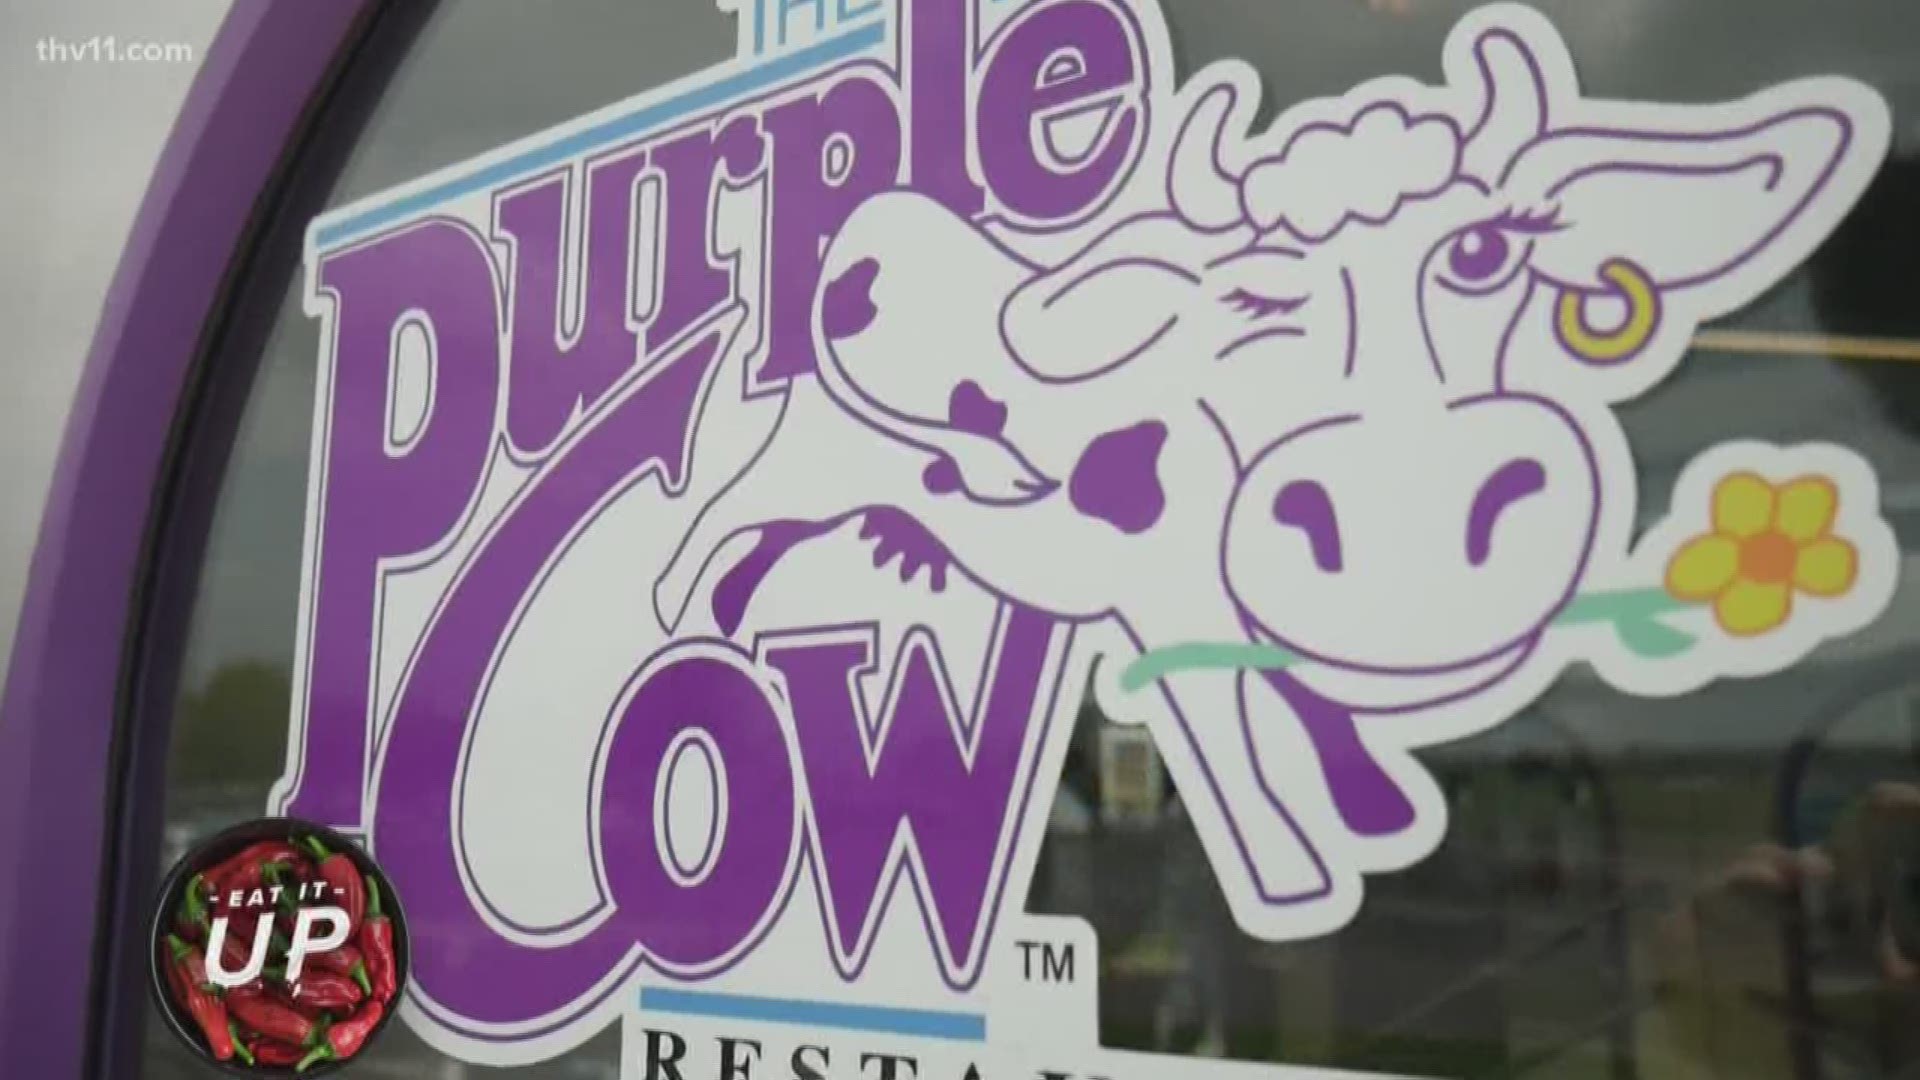 Purple cow HD wallpapers